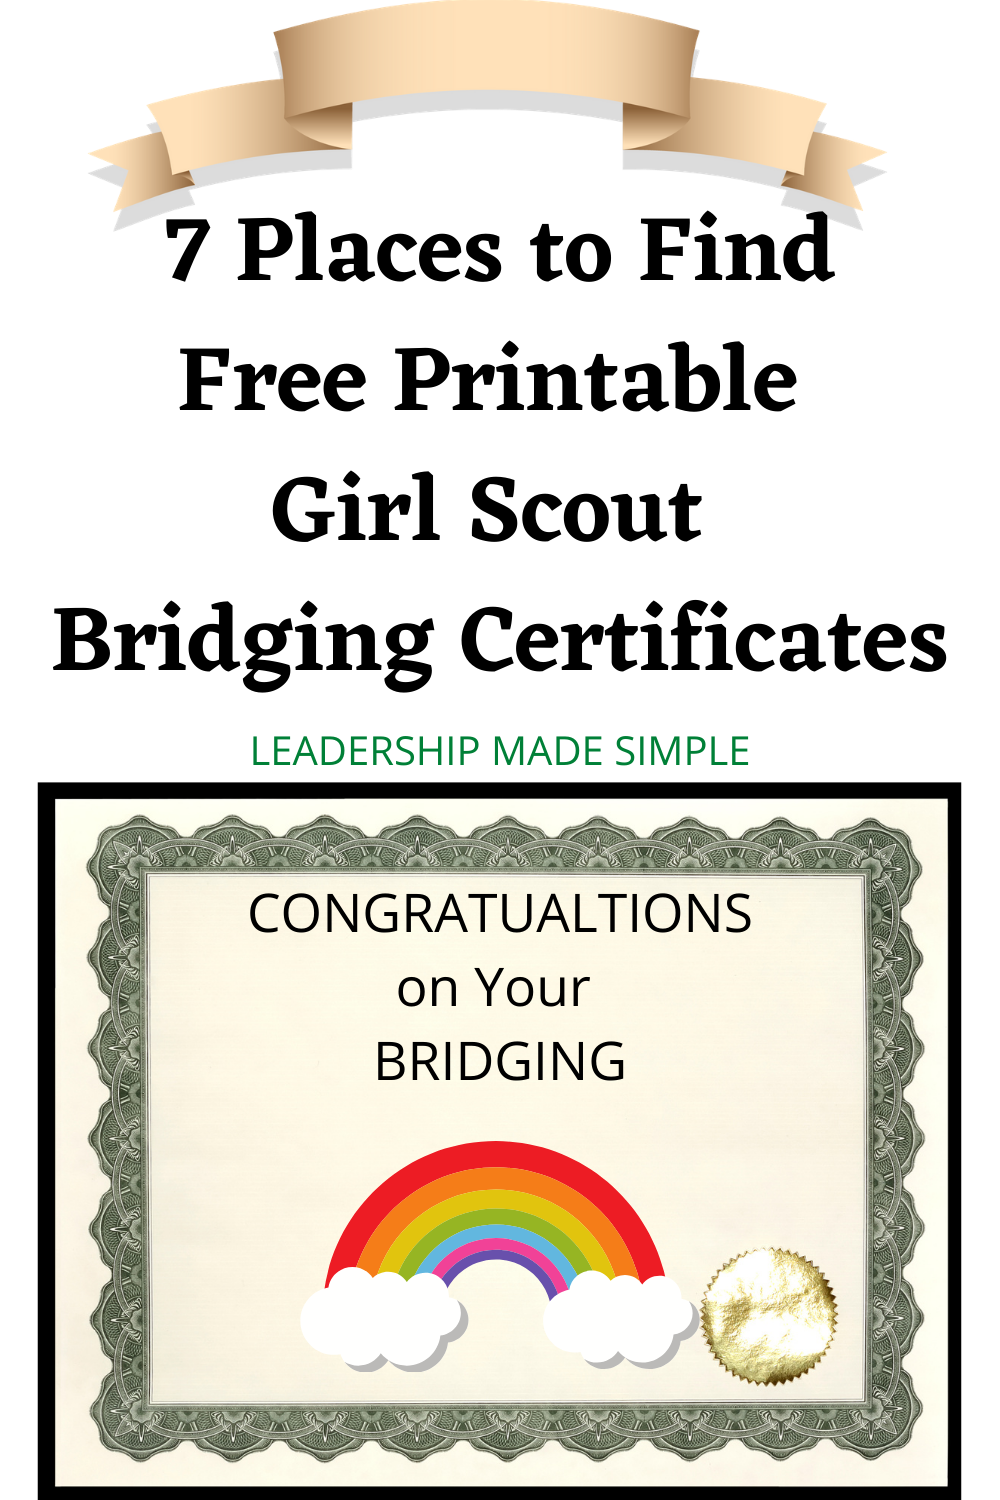 Free Printable Girl Scout Bridging Certificates